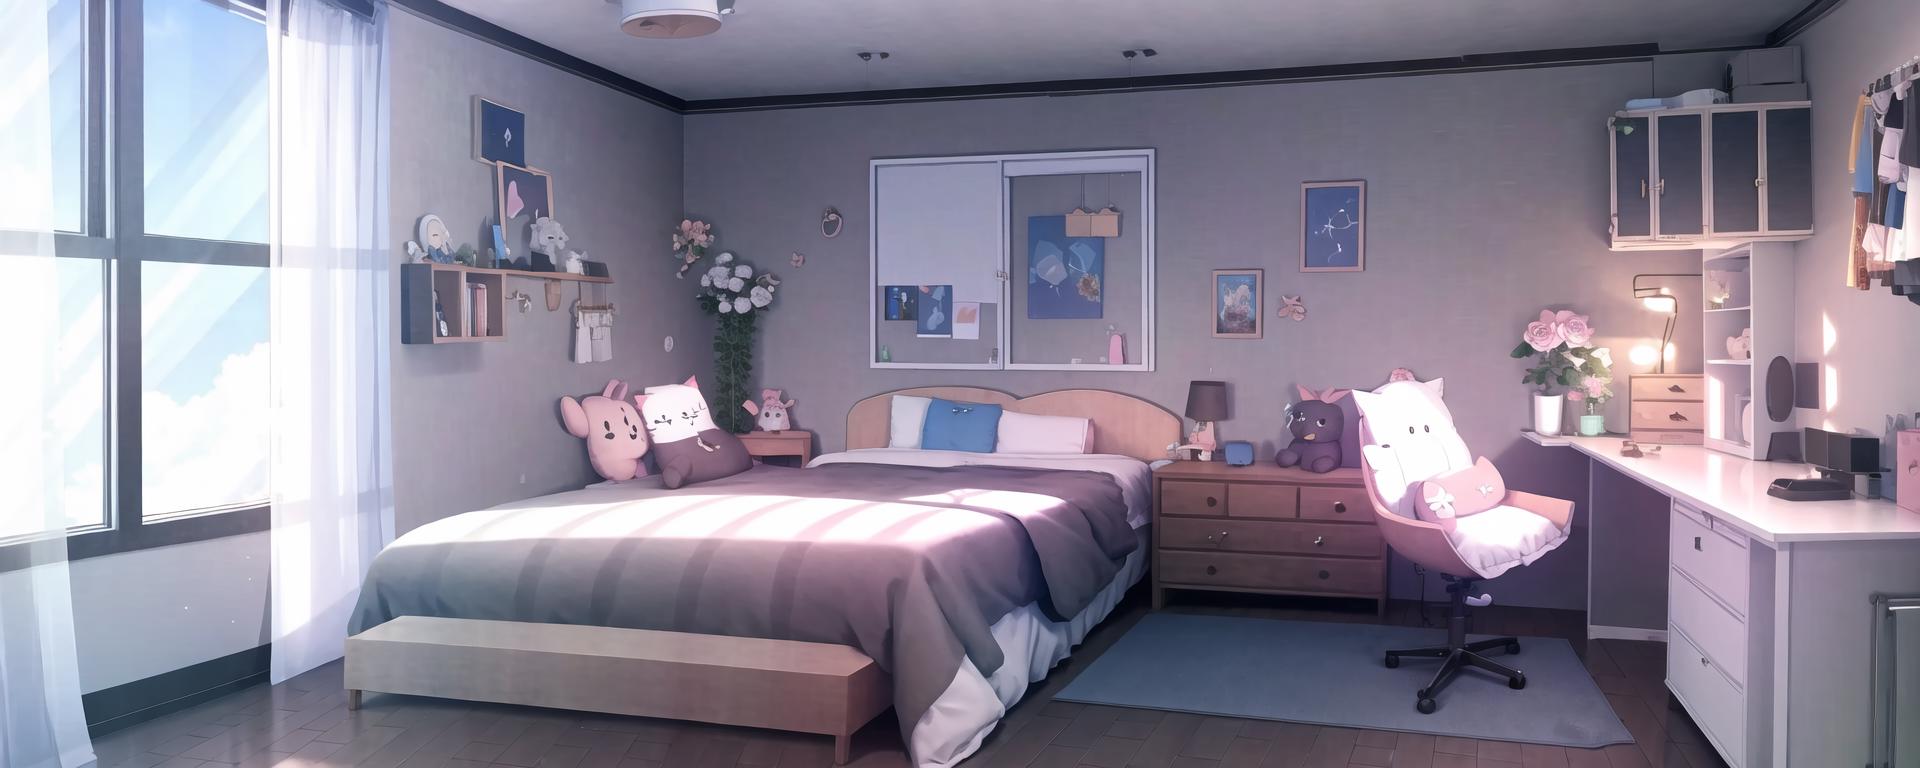 Timelapse Bedroom Background Anime - YouTube-nttc.com.vn